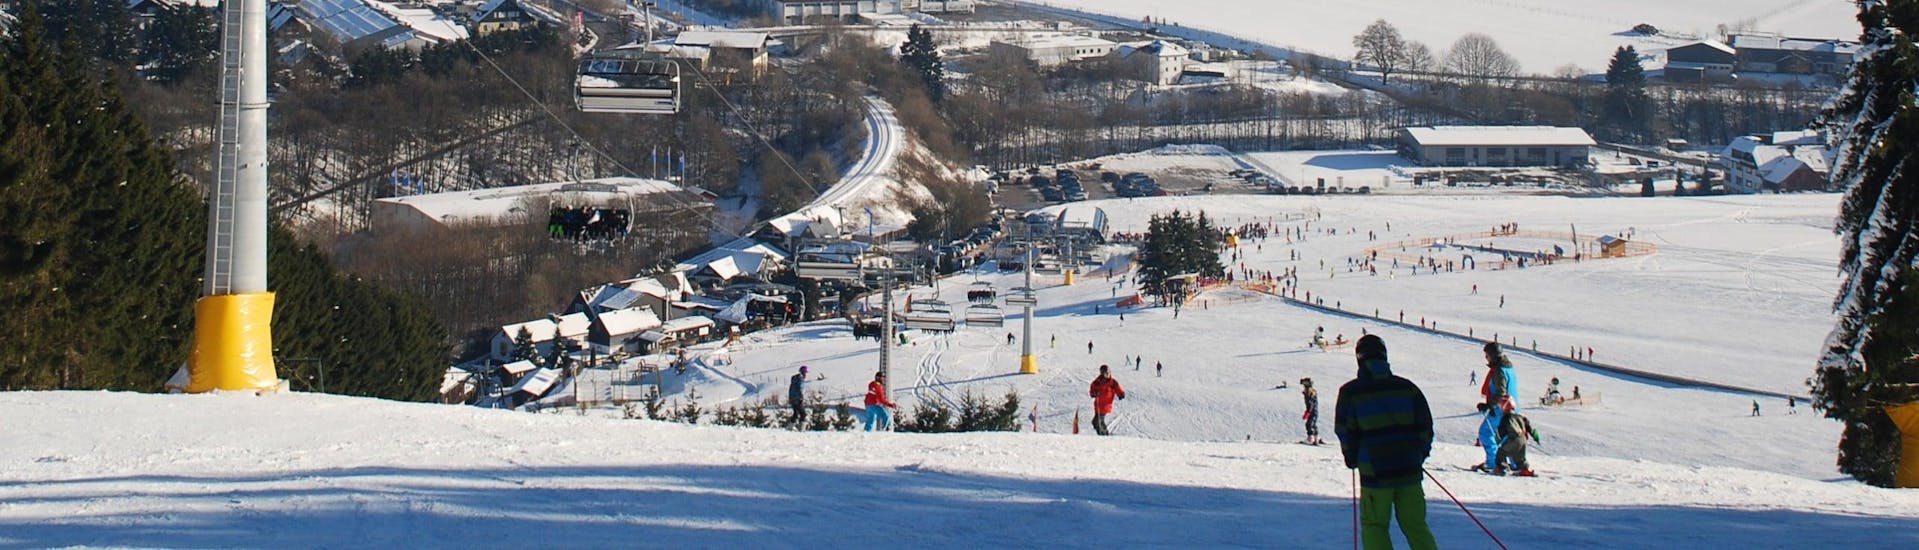 Ein Blick auf einen Sessellift im Skigebiet Willingen, wo örtliche Skischulen ihre Skikurse an Skifahrer aller Levels anbieten.